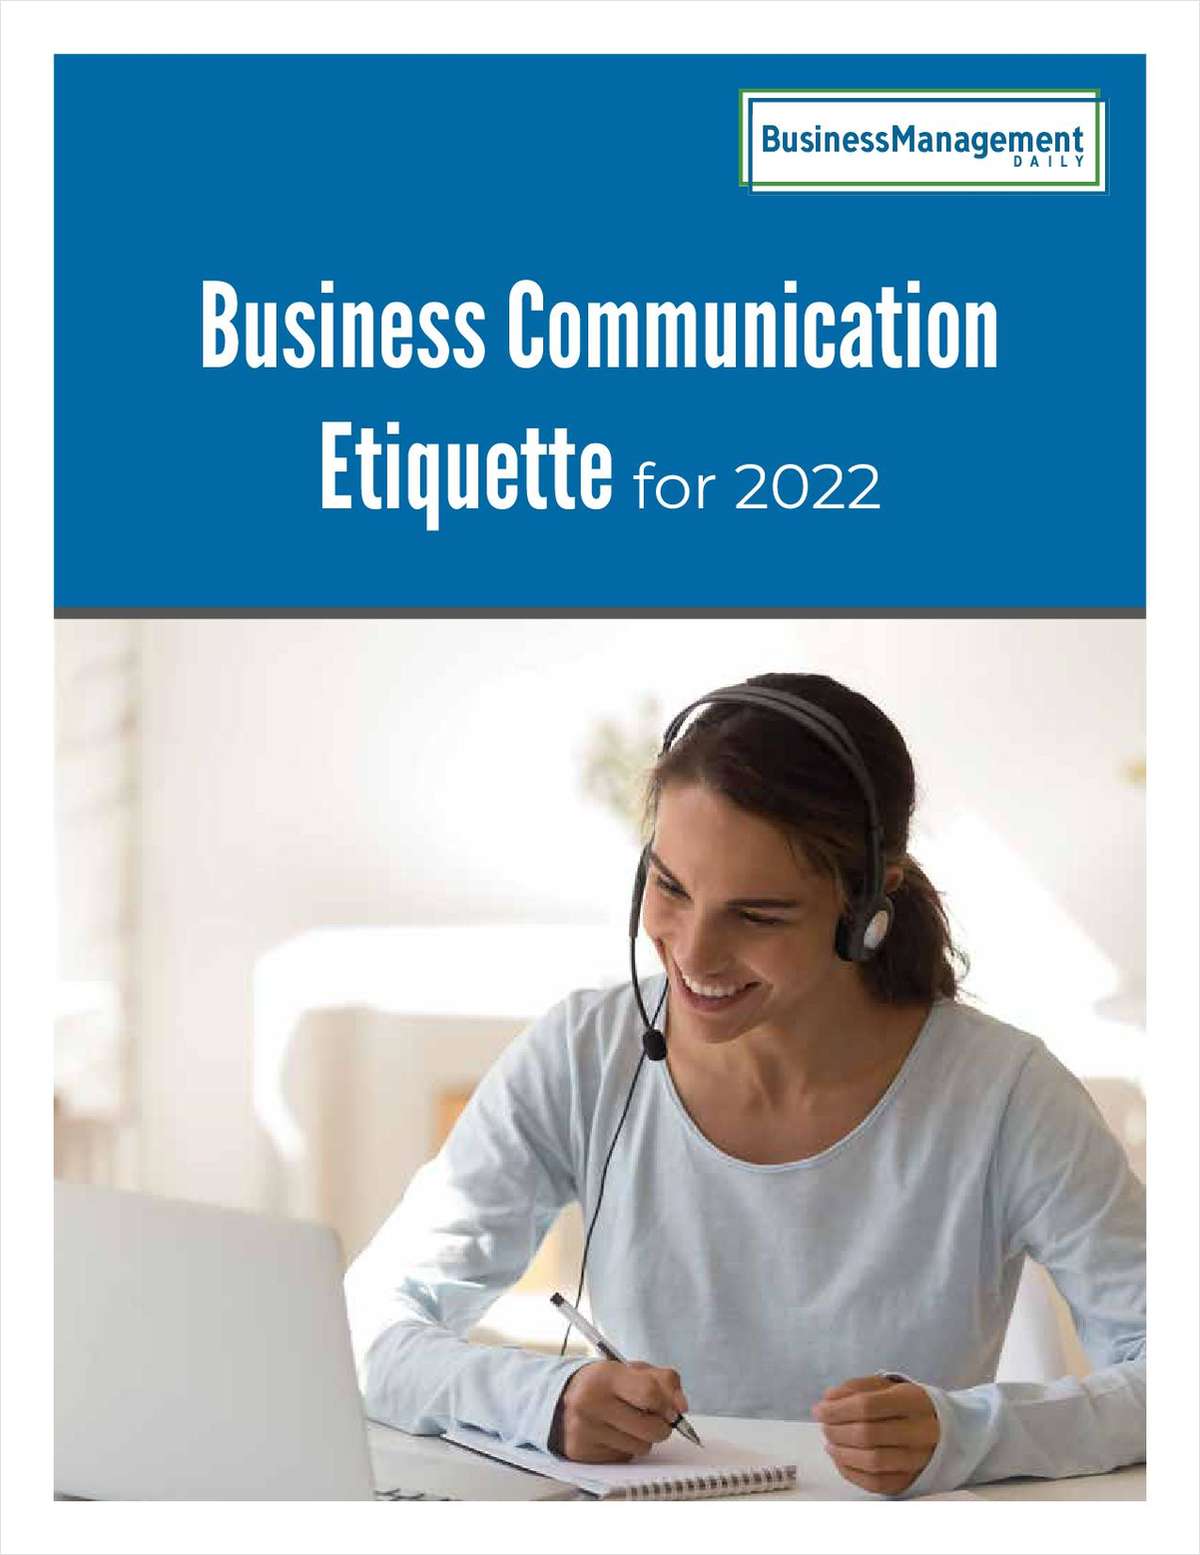 Business Communication Etiquette for 2022